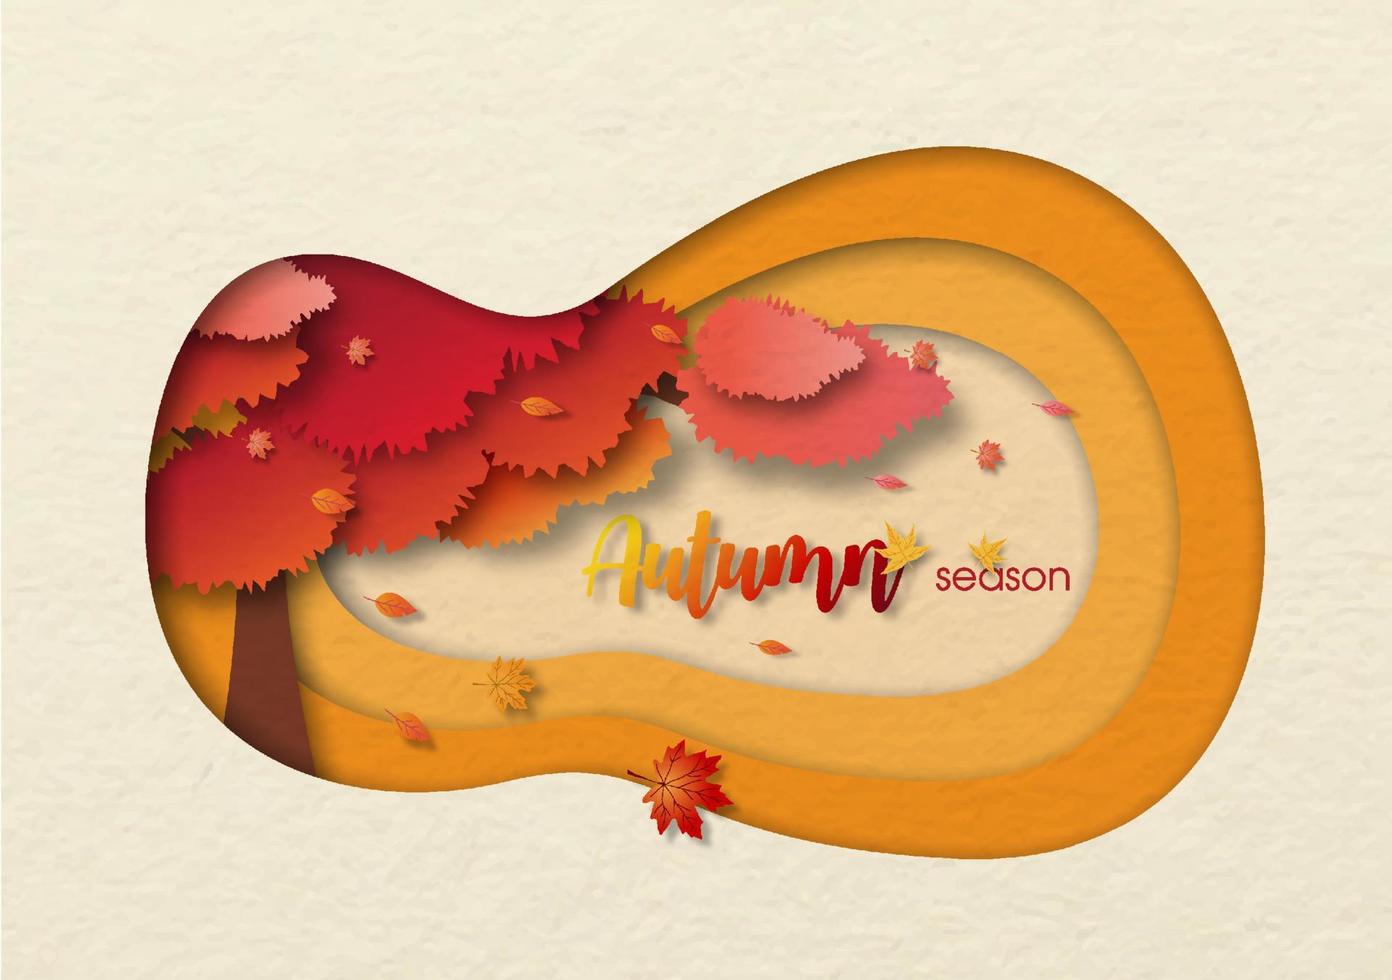 kleiner Ahornbaum im Herbst und Herunterblasen der Blätter mit dem Wortlaut der Saison, alles in Höhlenloch und Scherenschnitt-Design auf cremefarbenem Hintergrund. vektor